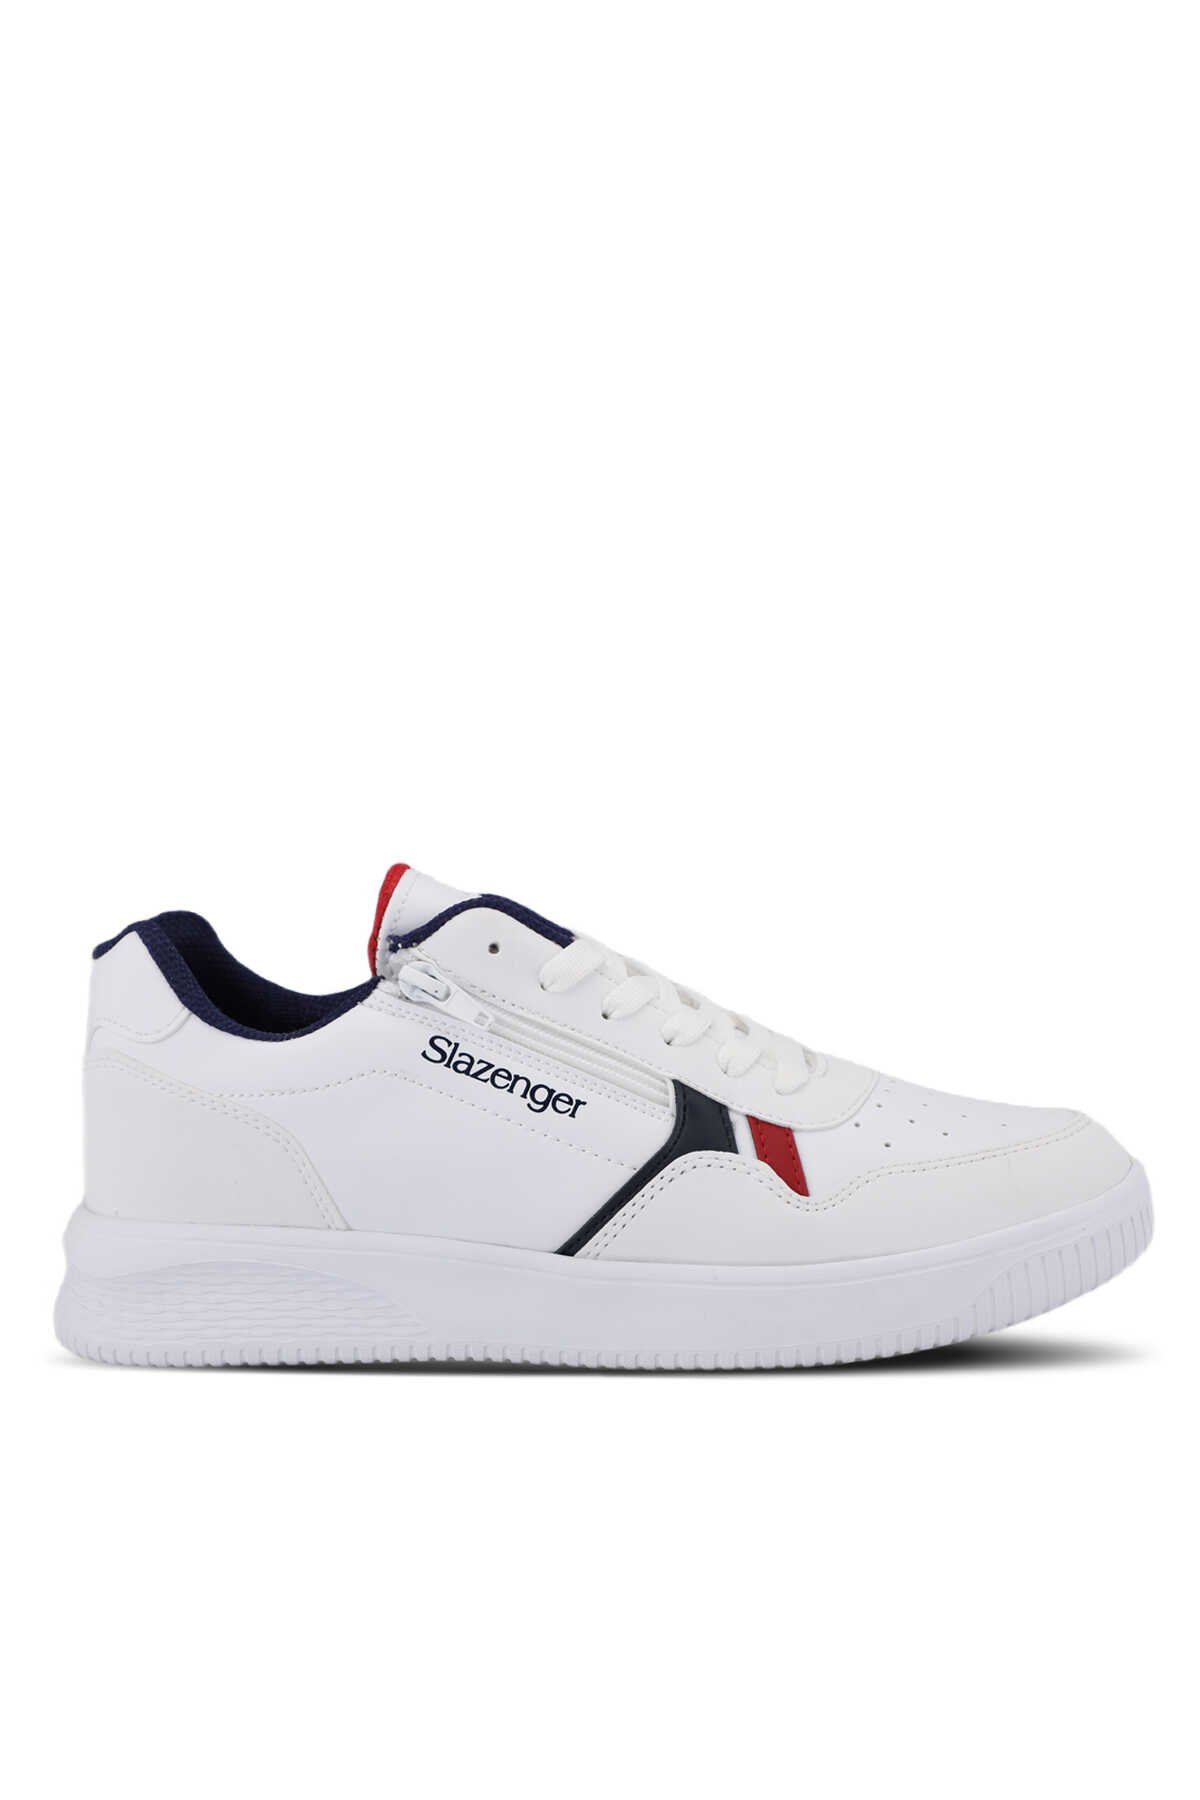 Slazenger - Slazenger MAJORITY I Sneaker Erkek Ayakkabı Beyaz / Lacivert